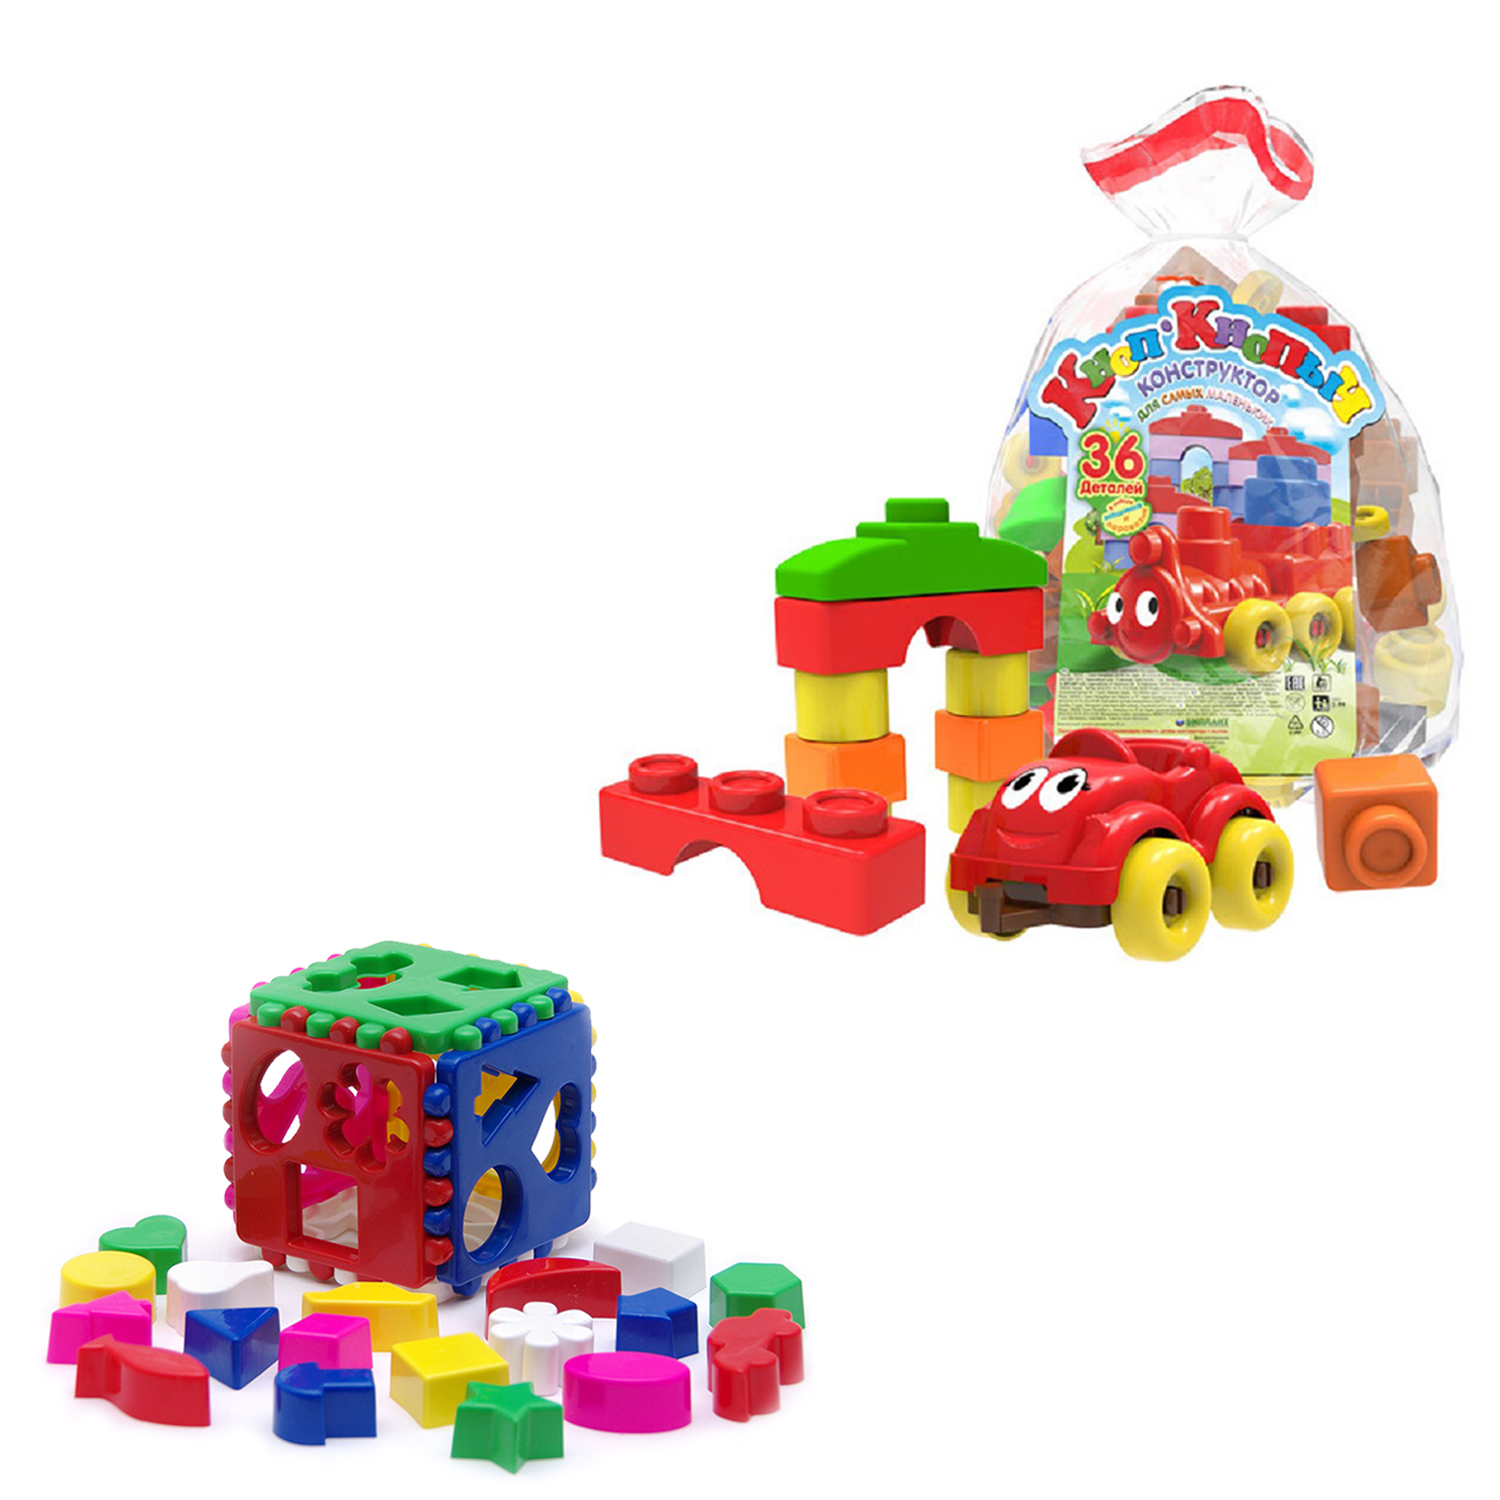 Развивающие игрушки Karolina Toys Сортер Кубик большой + Конструктор Кноп-Кнопыч 36 дет.